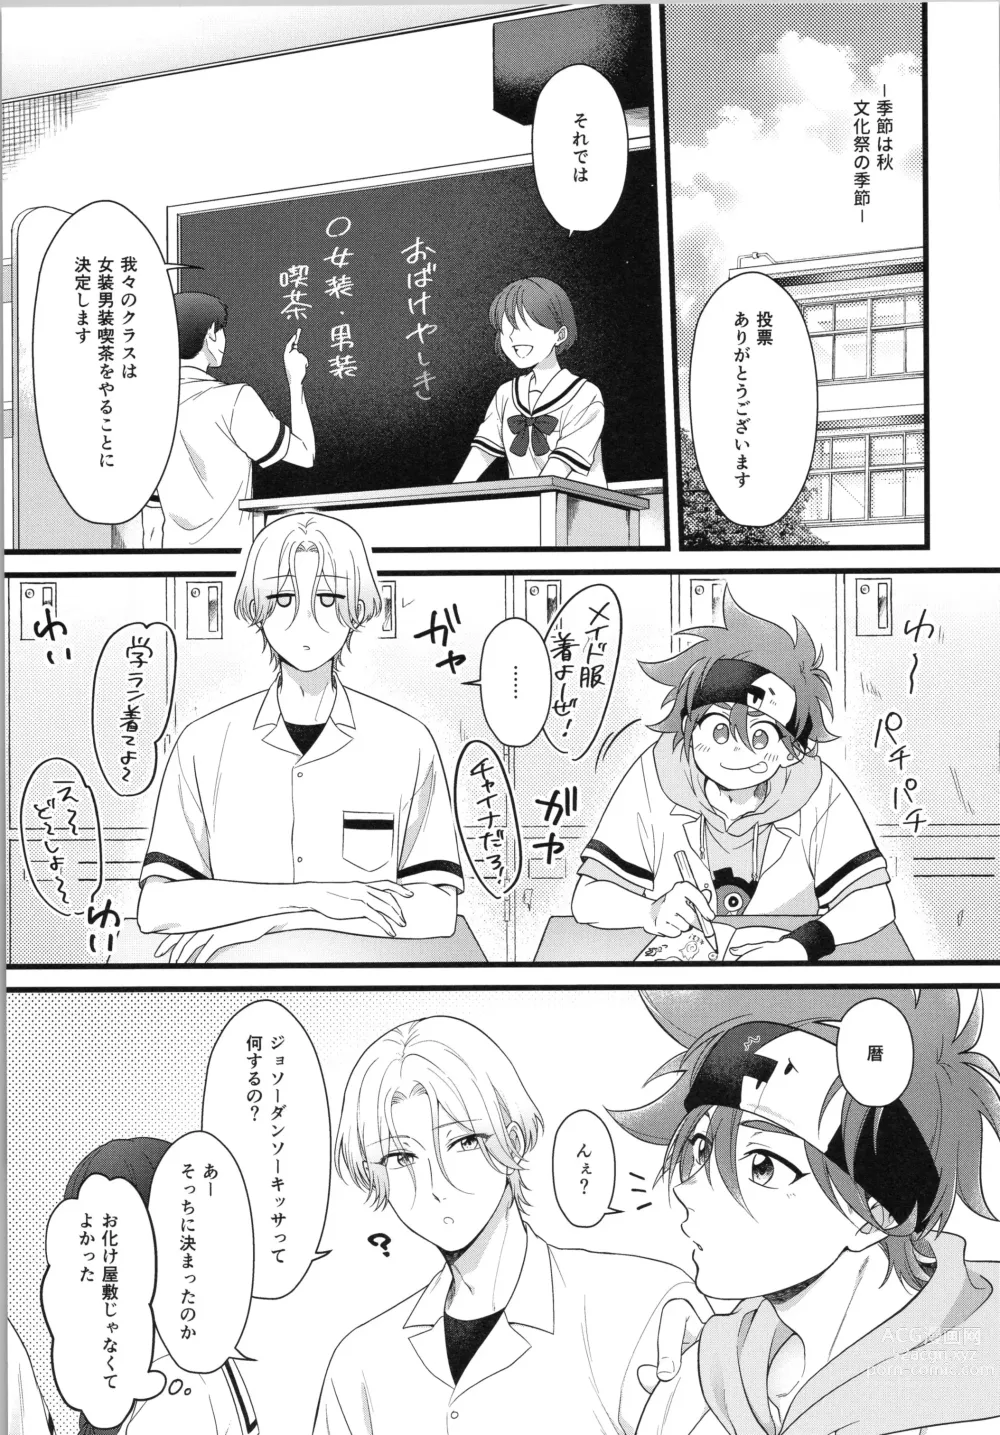 Page 4 of doujinshi Omae ga ichiban kawaī yo